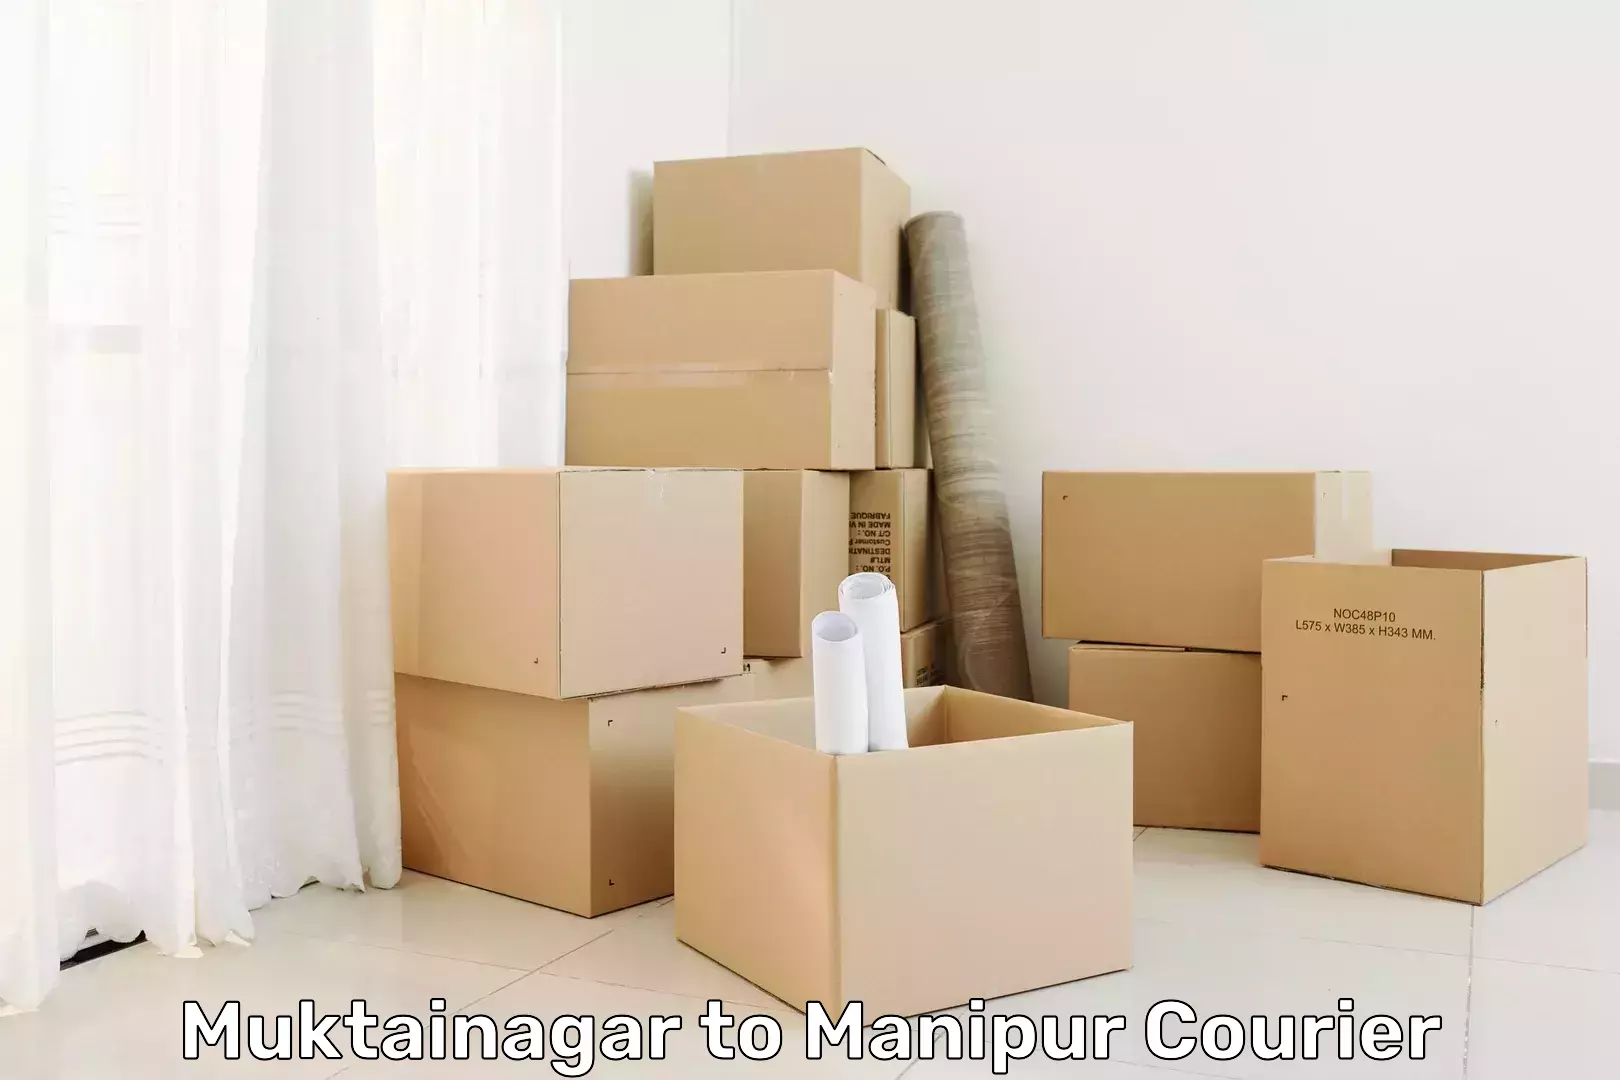 Global shipping networks Muktainagar to IIIT Senapati